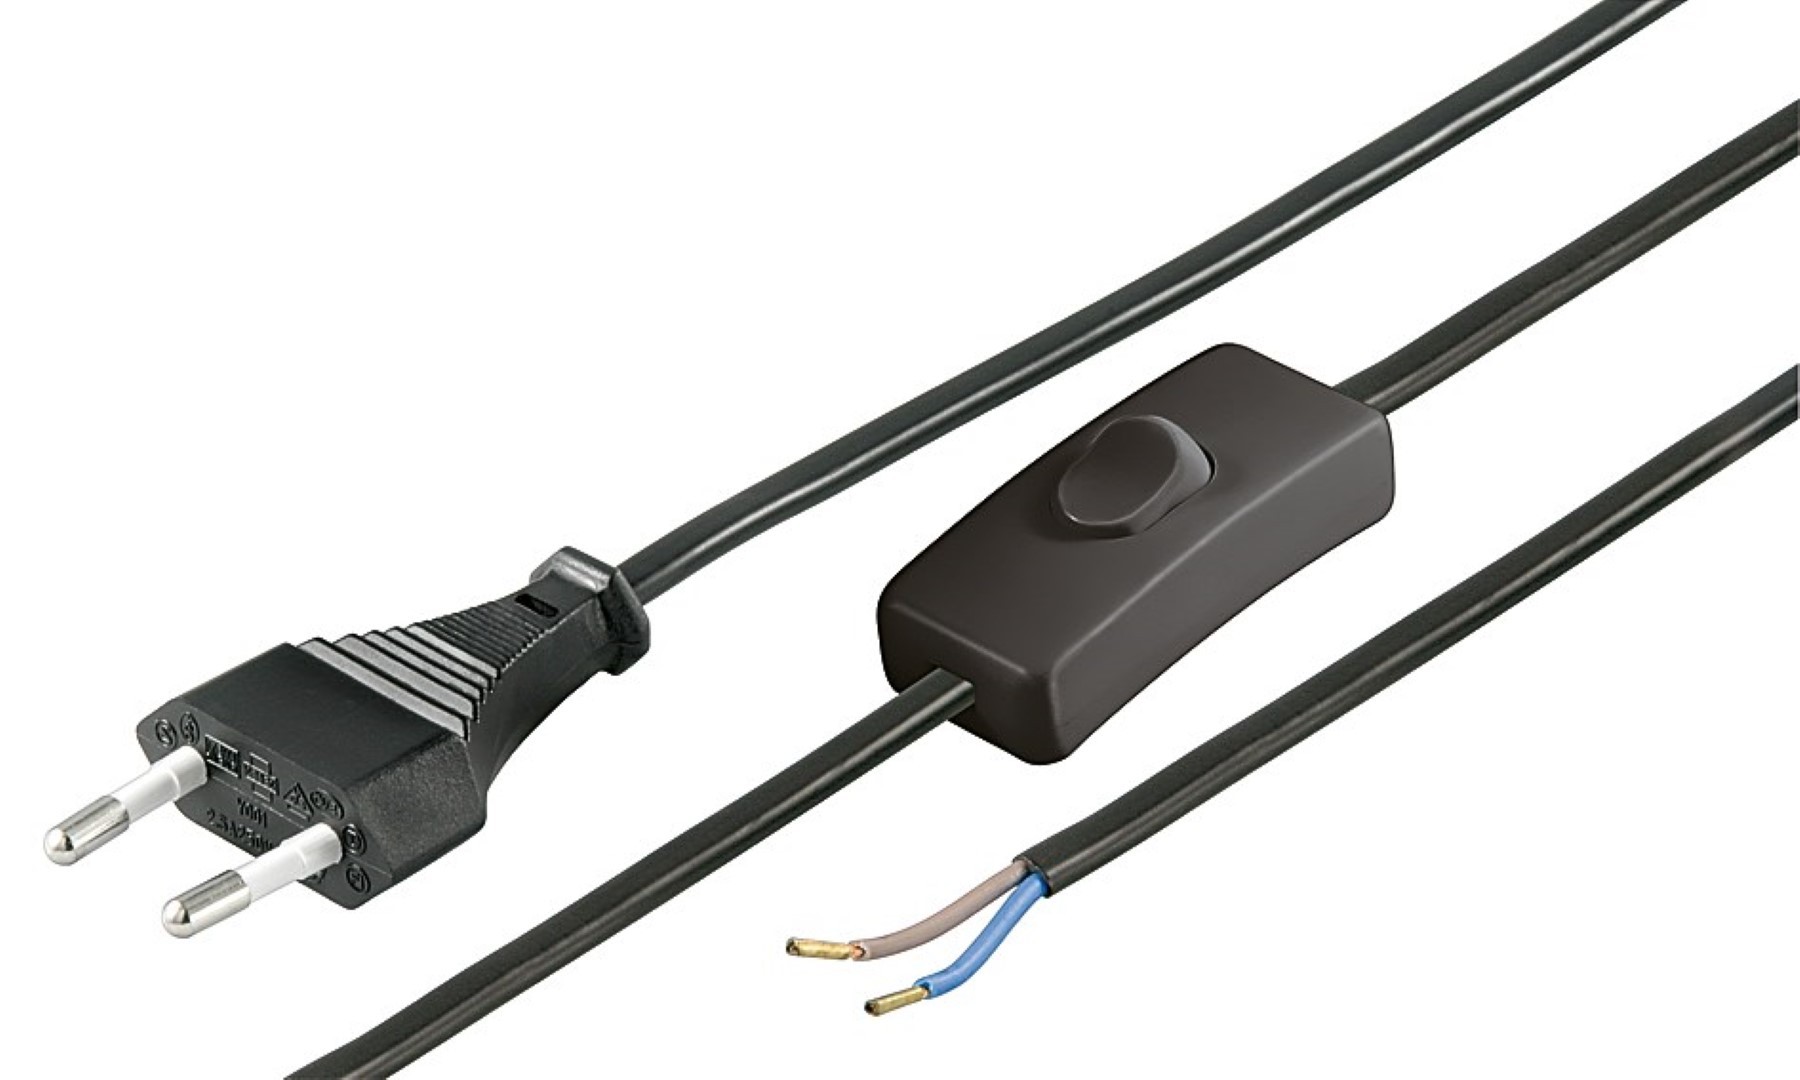 Euro Kabel mit Schalter 2m zum Konfektionieren für Lampen Leuchten Geräte  2-polig Schnur-Schalter Weiß: : Baumarkt